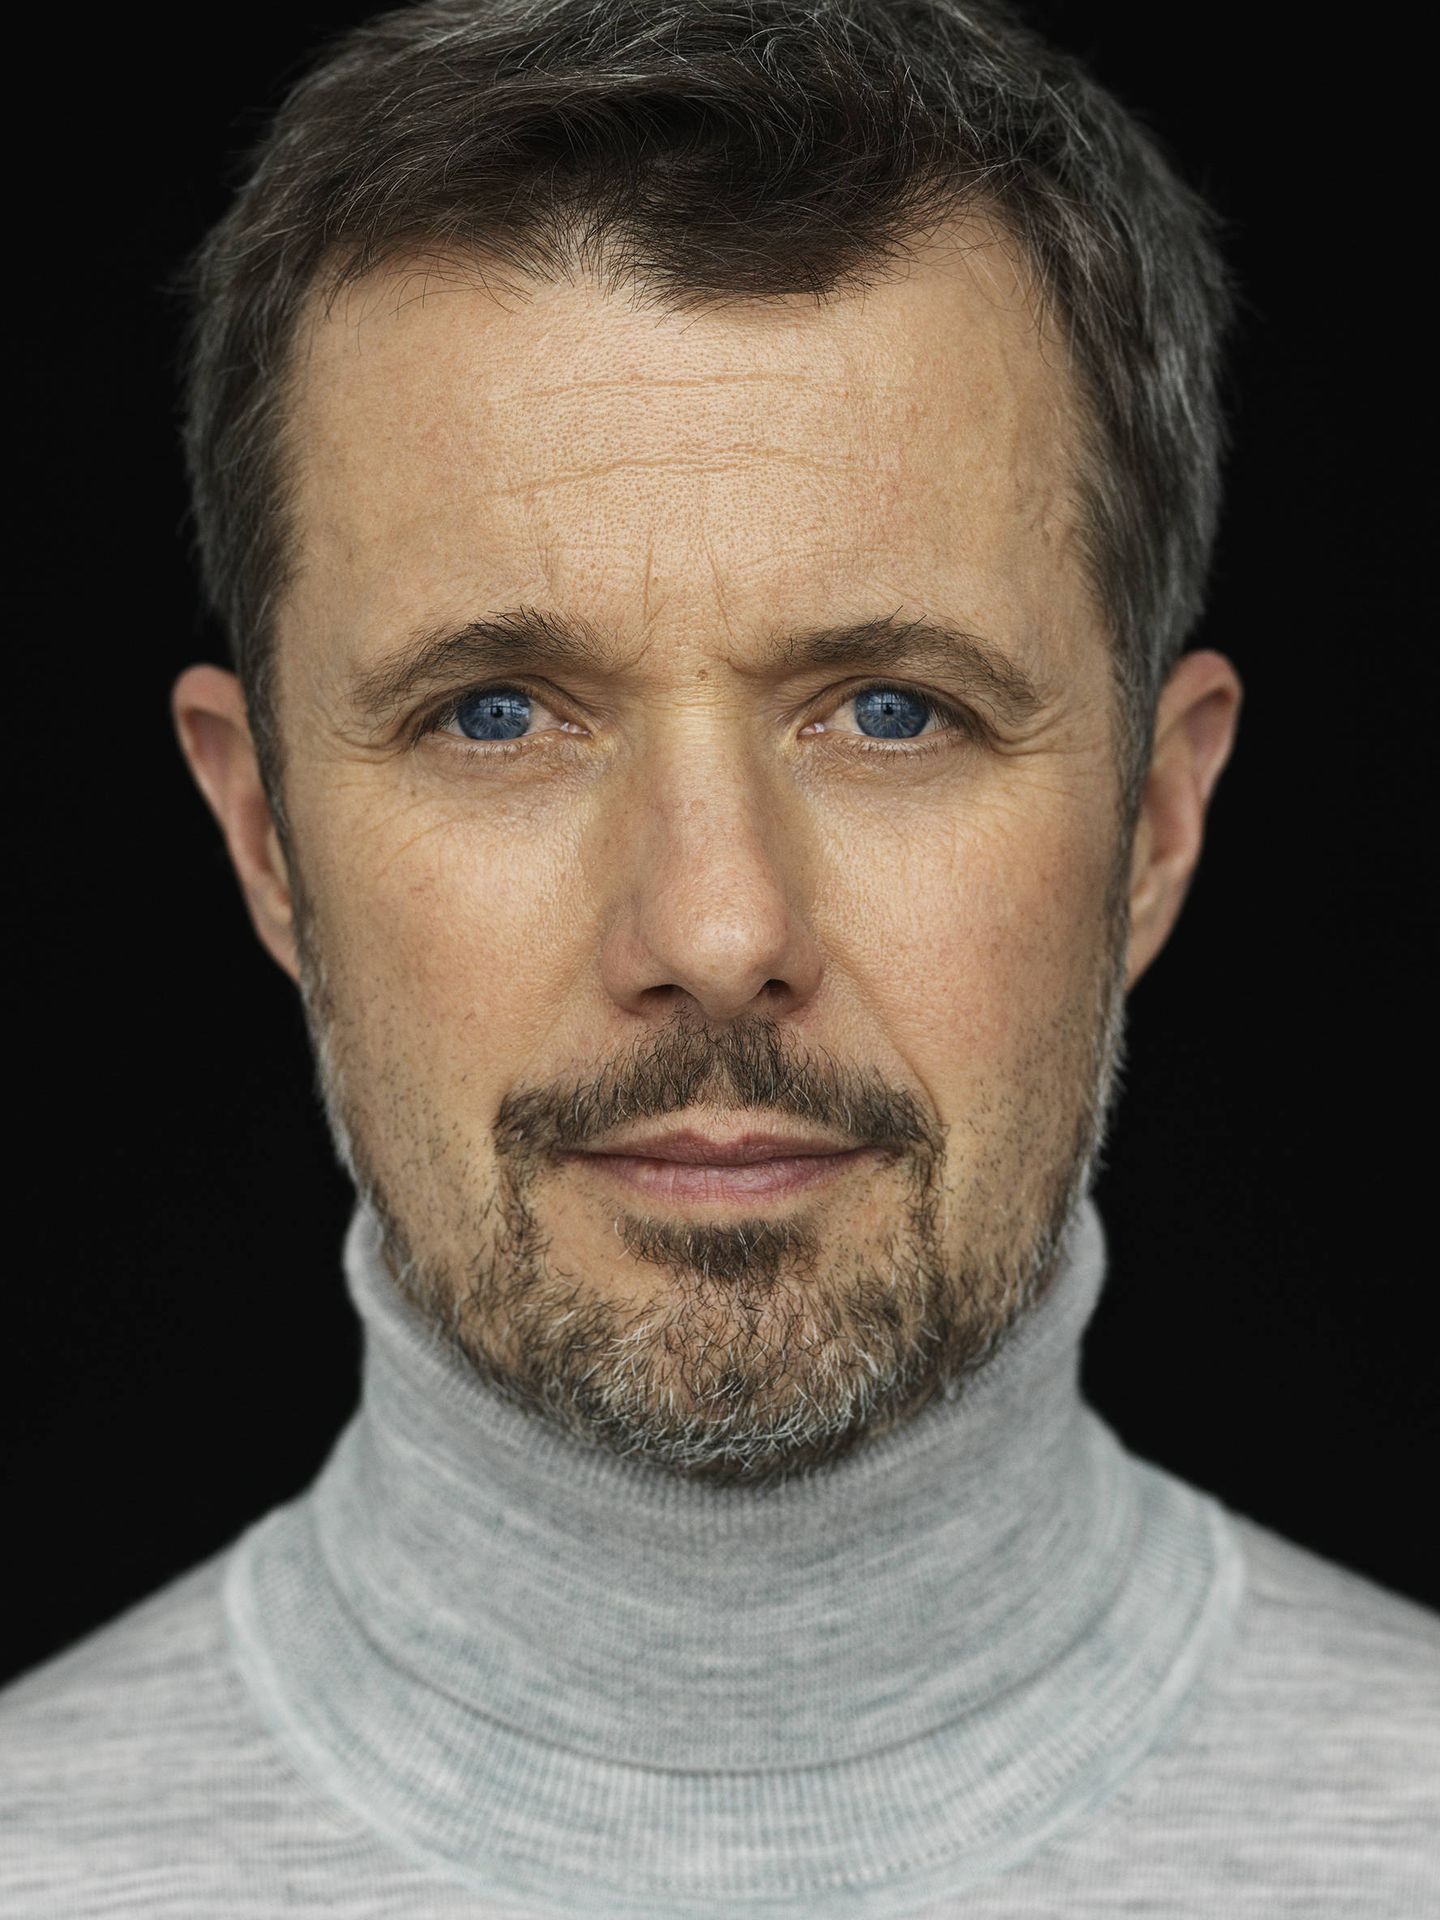 El príncipe danés, en otro reciente retrato oficial. (Steen Evald)